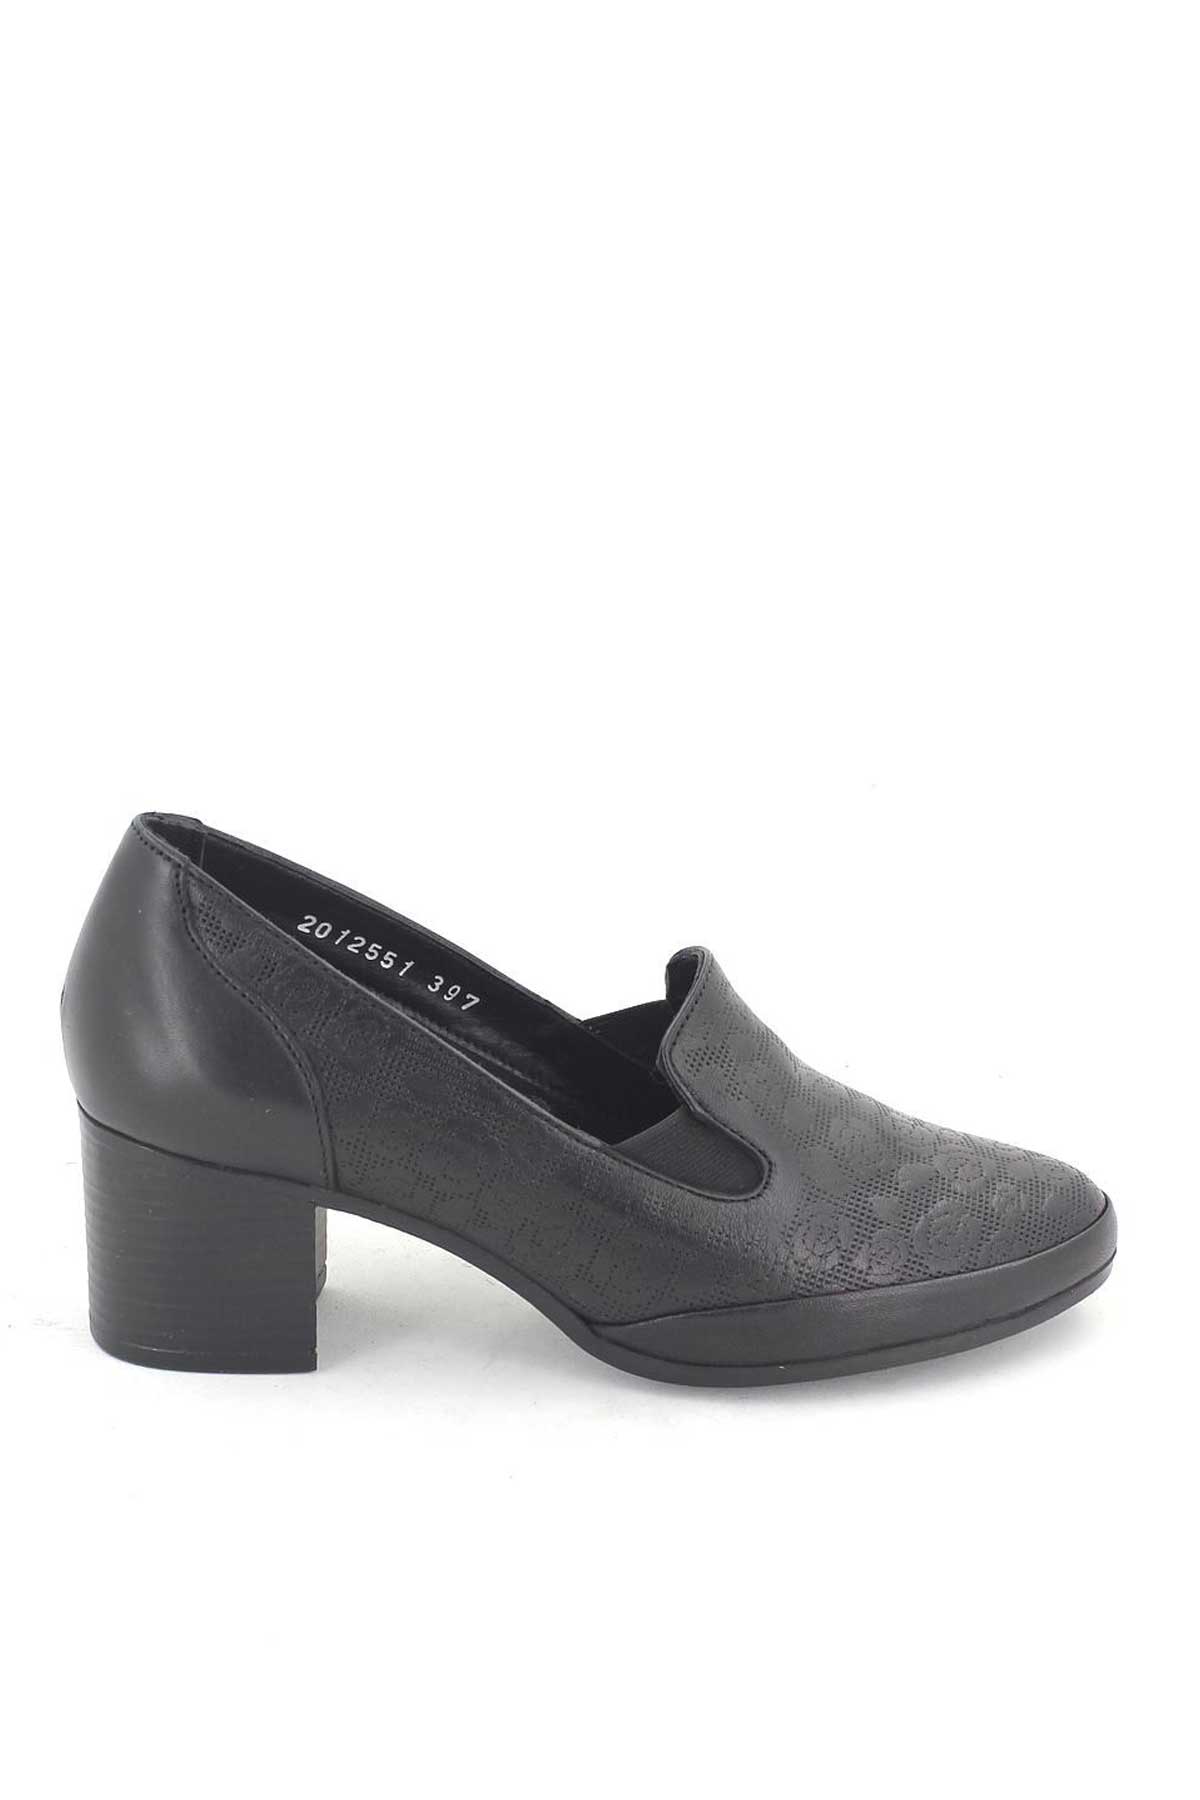 Kadın Topuklu Deri Ayakkabı Baskılı Siyah 1911902K